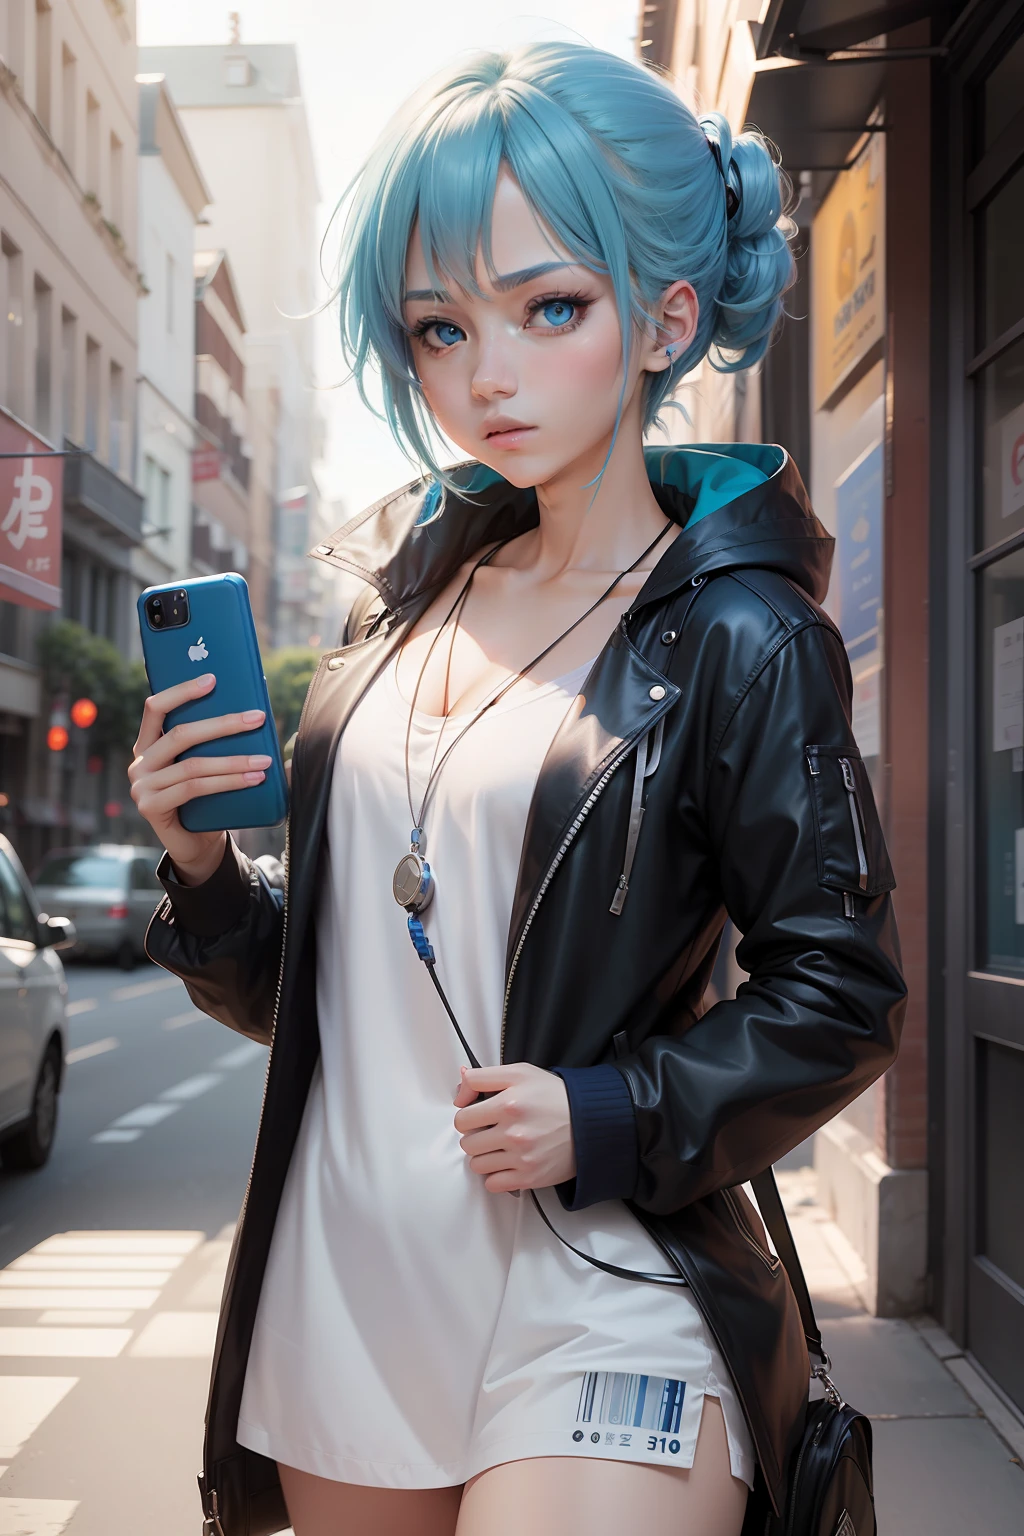 Anime charakter mit blauen haaren